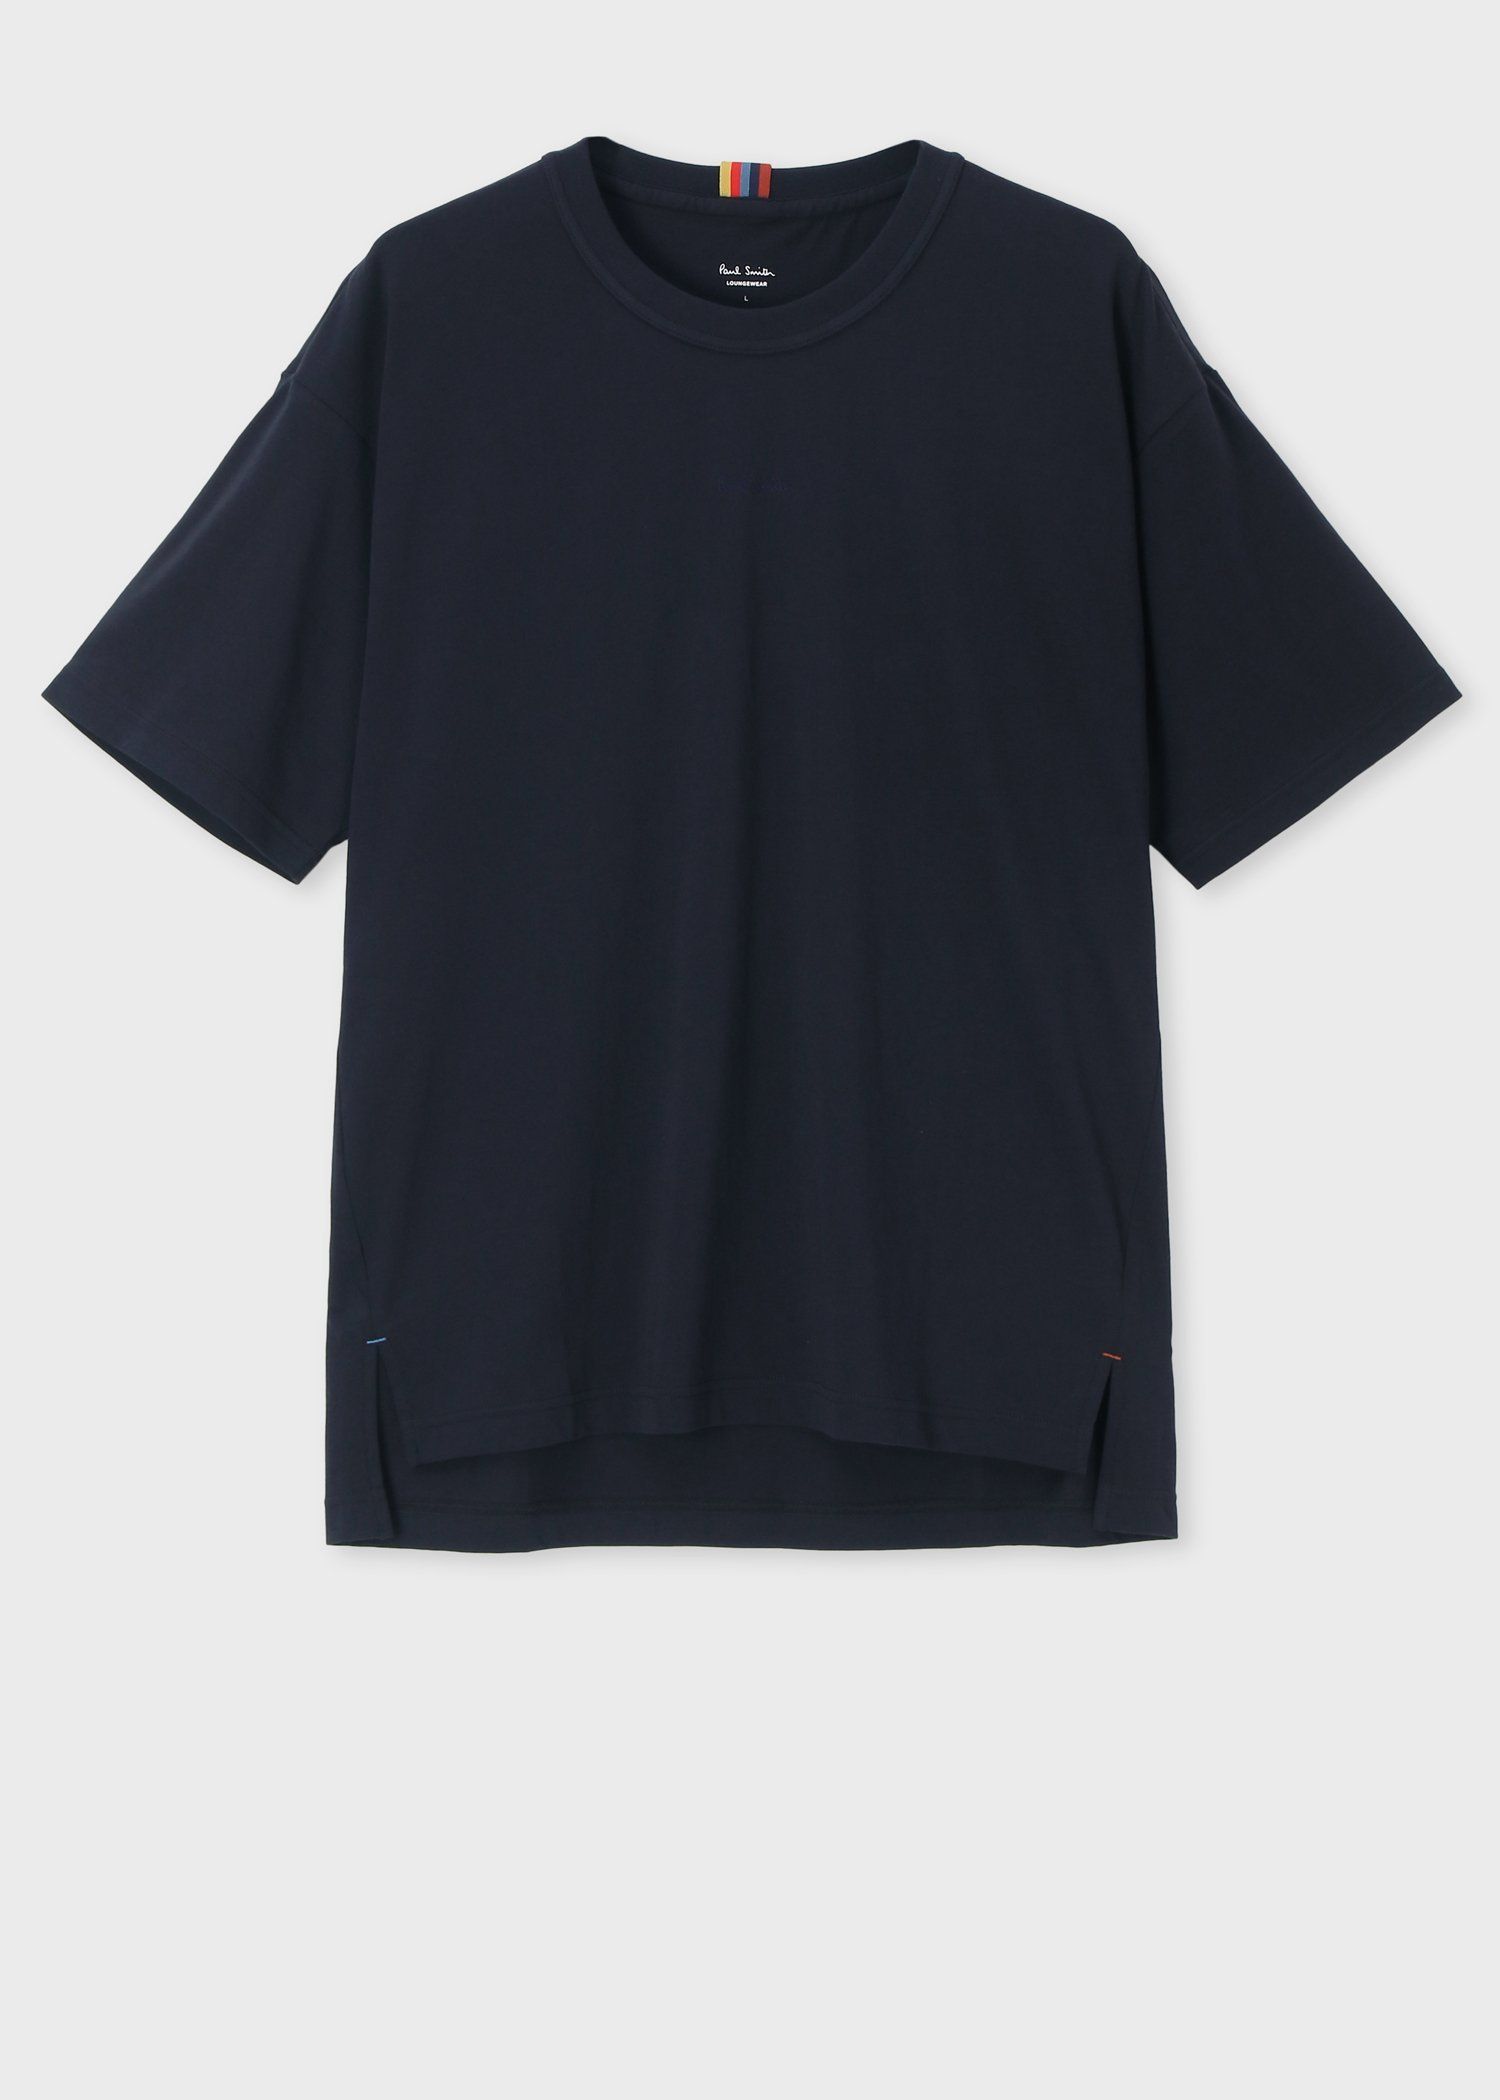 Paul Smith ロゴプリントTシャツ Black - Tシャツ/カットソー(半袖/袖なし)